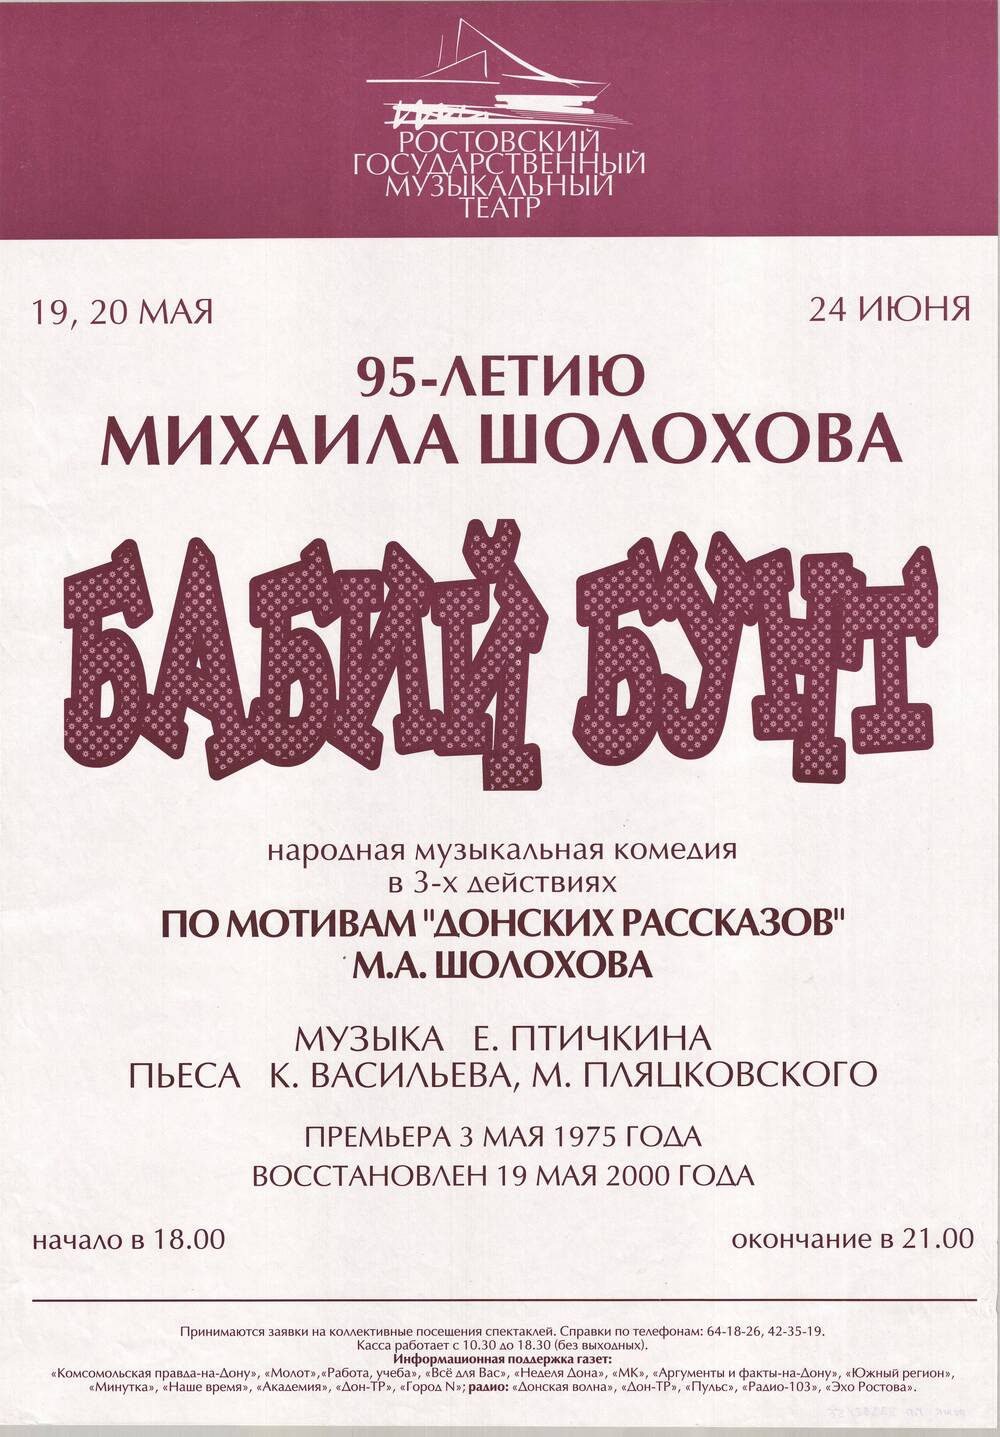 Афиша спектакля  Бабий бунт в Ростовском  государственном музыкальном театре.